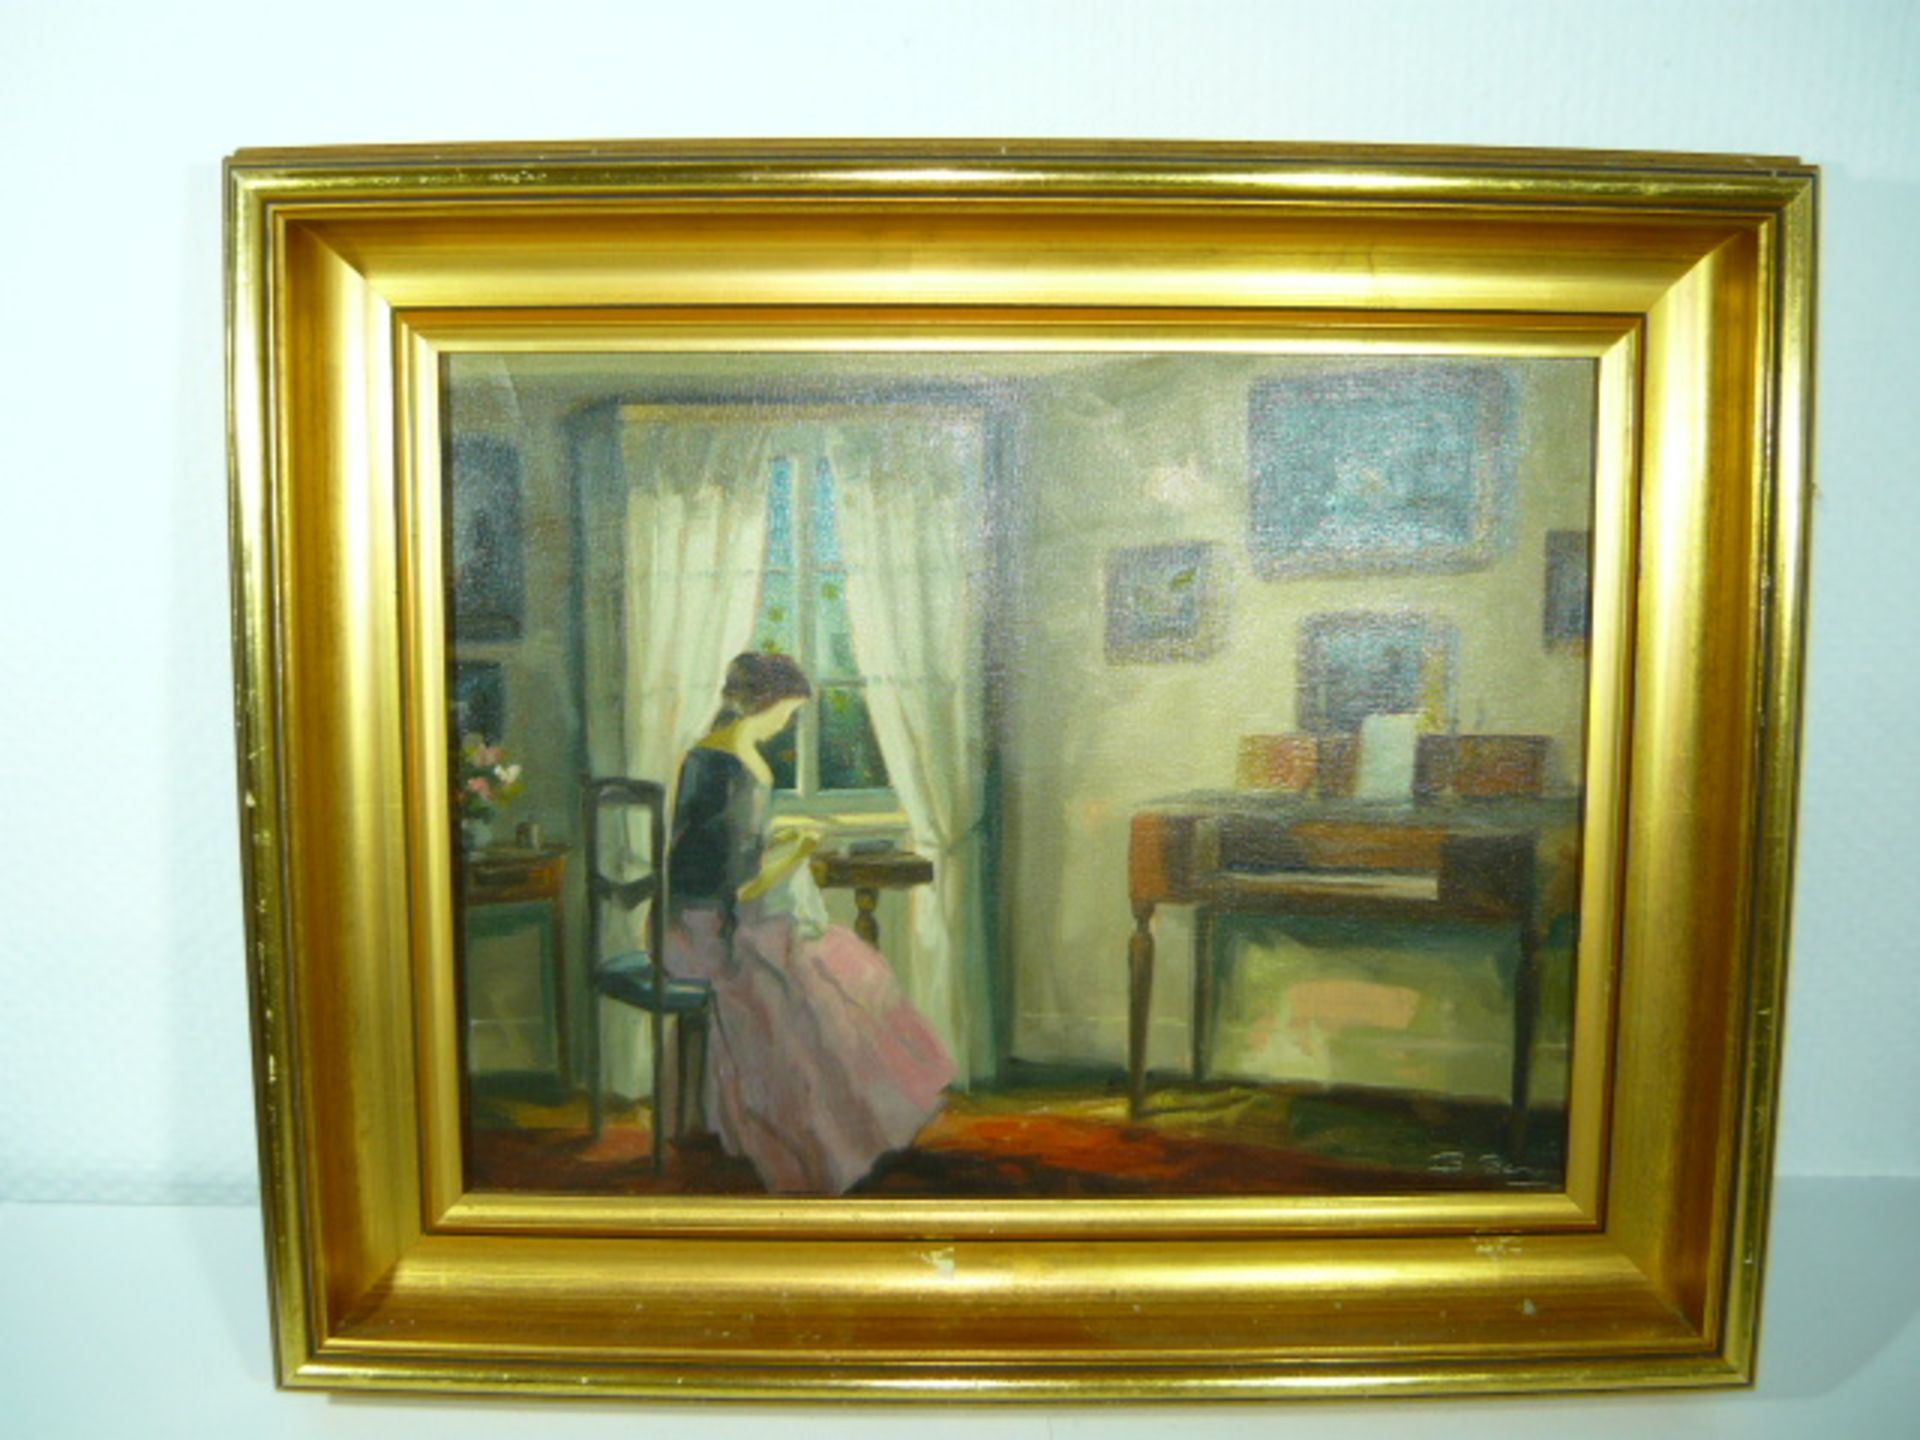 Nichtidentifizierter Künstler. Interieur mit Frau am Fenster. Öl/Lw. Sig. Ca. 31x40cm. Rahmen.